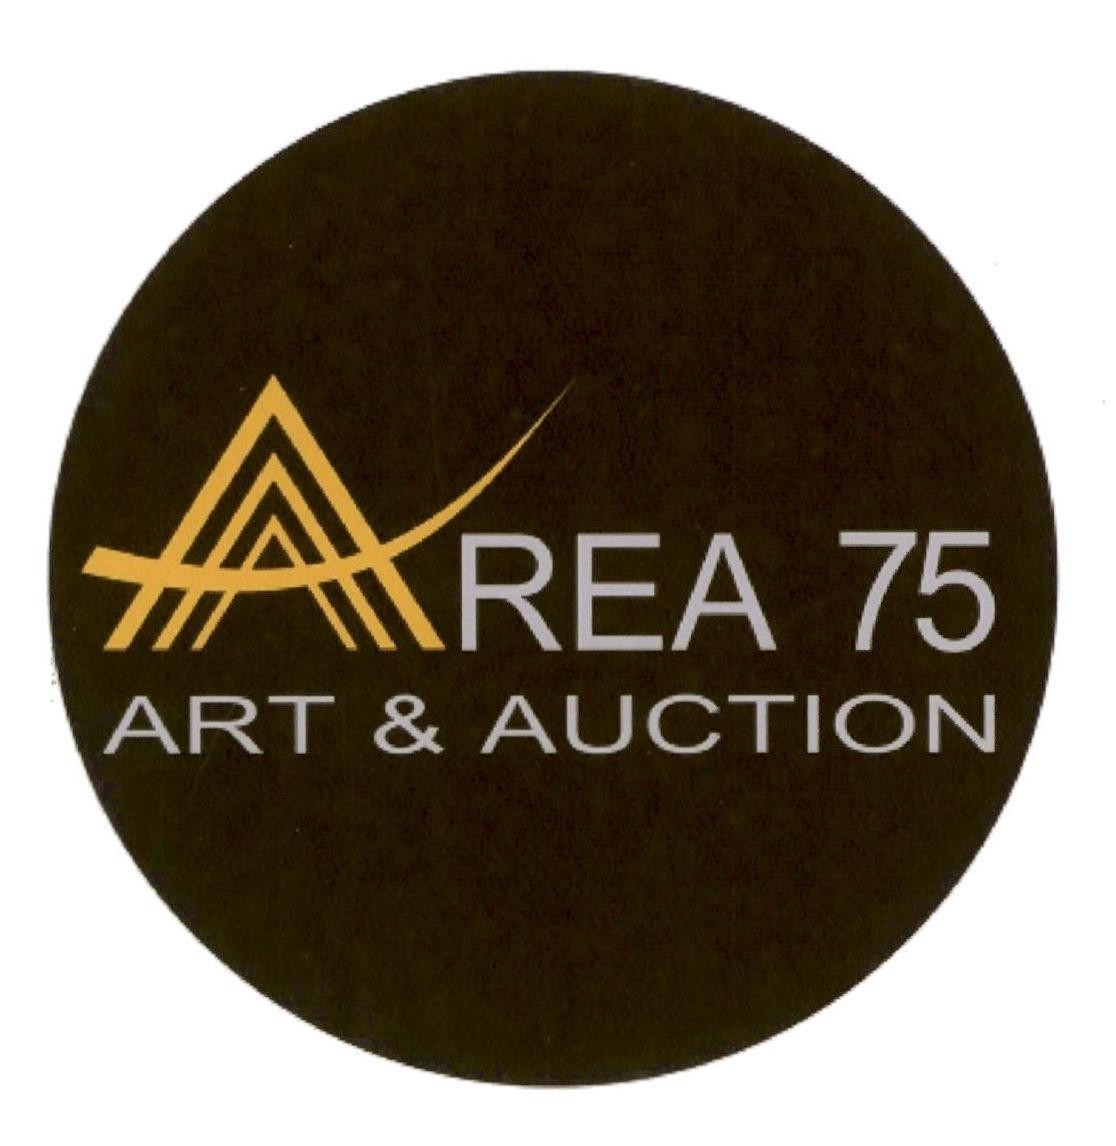 AREA 75 ART & AUCTION